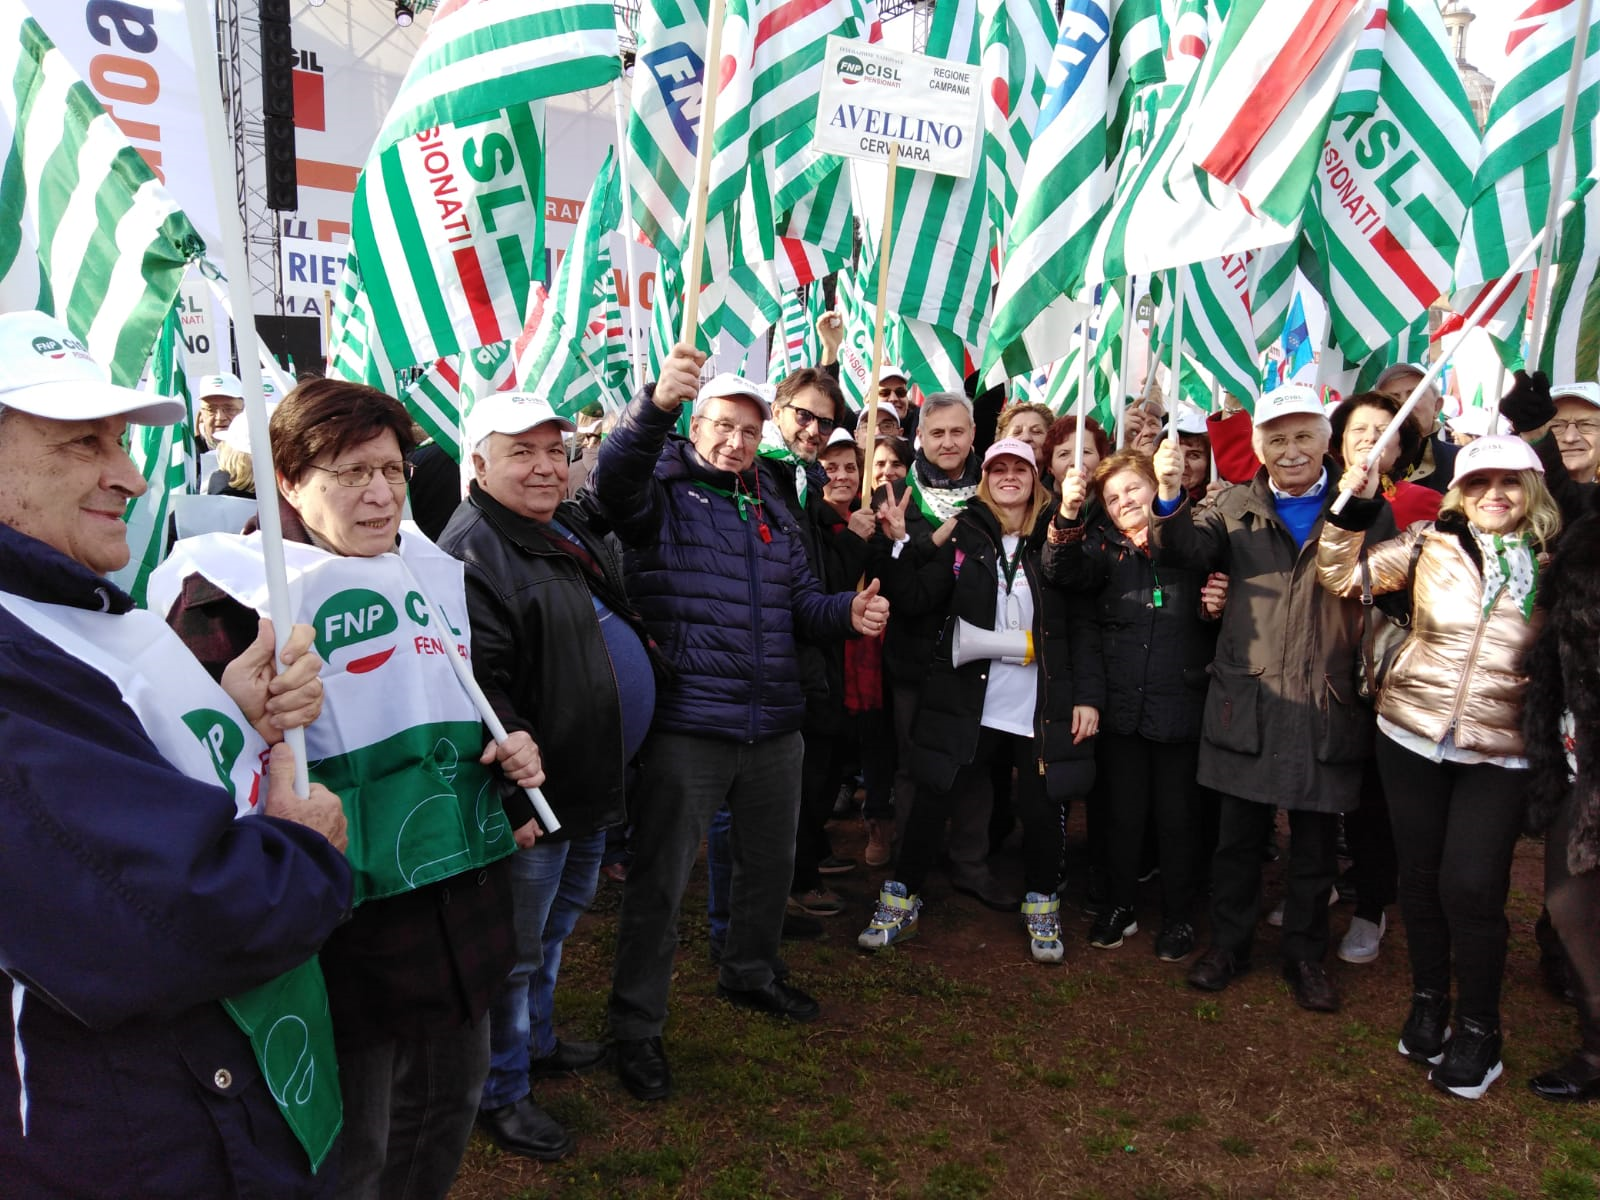 Avellino|Manifestazione sindacale a Roma, Melchionna (Cisl): no al blocco delle opere